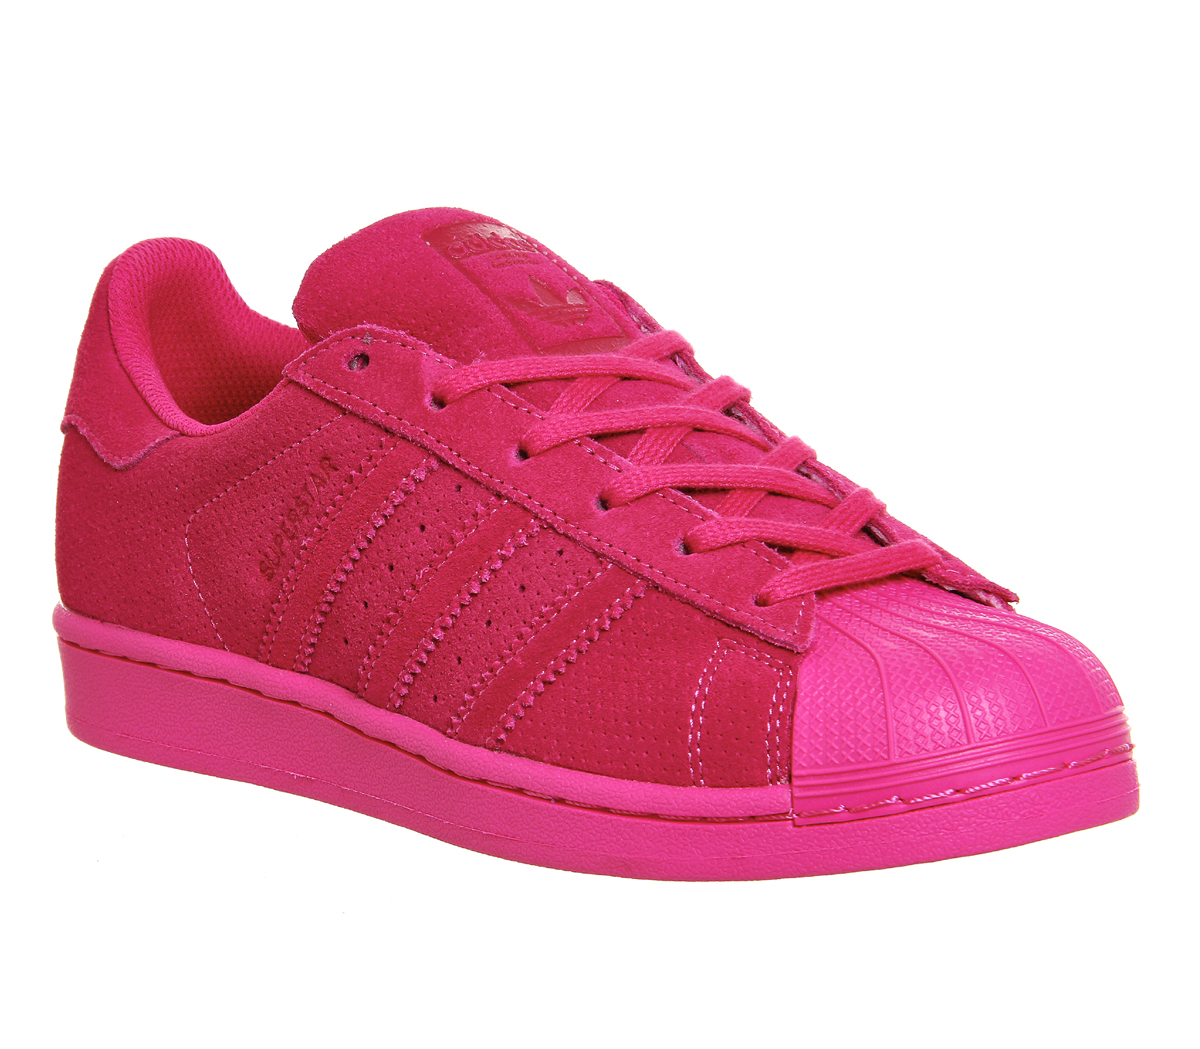 adidas Superstar Eqt Pink Mono Suede 